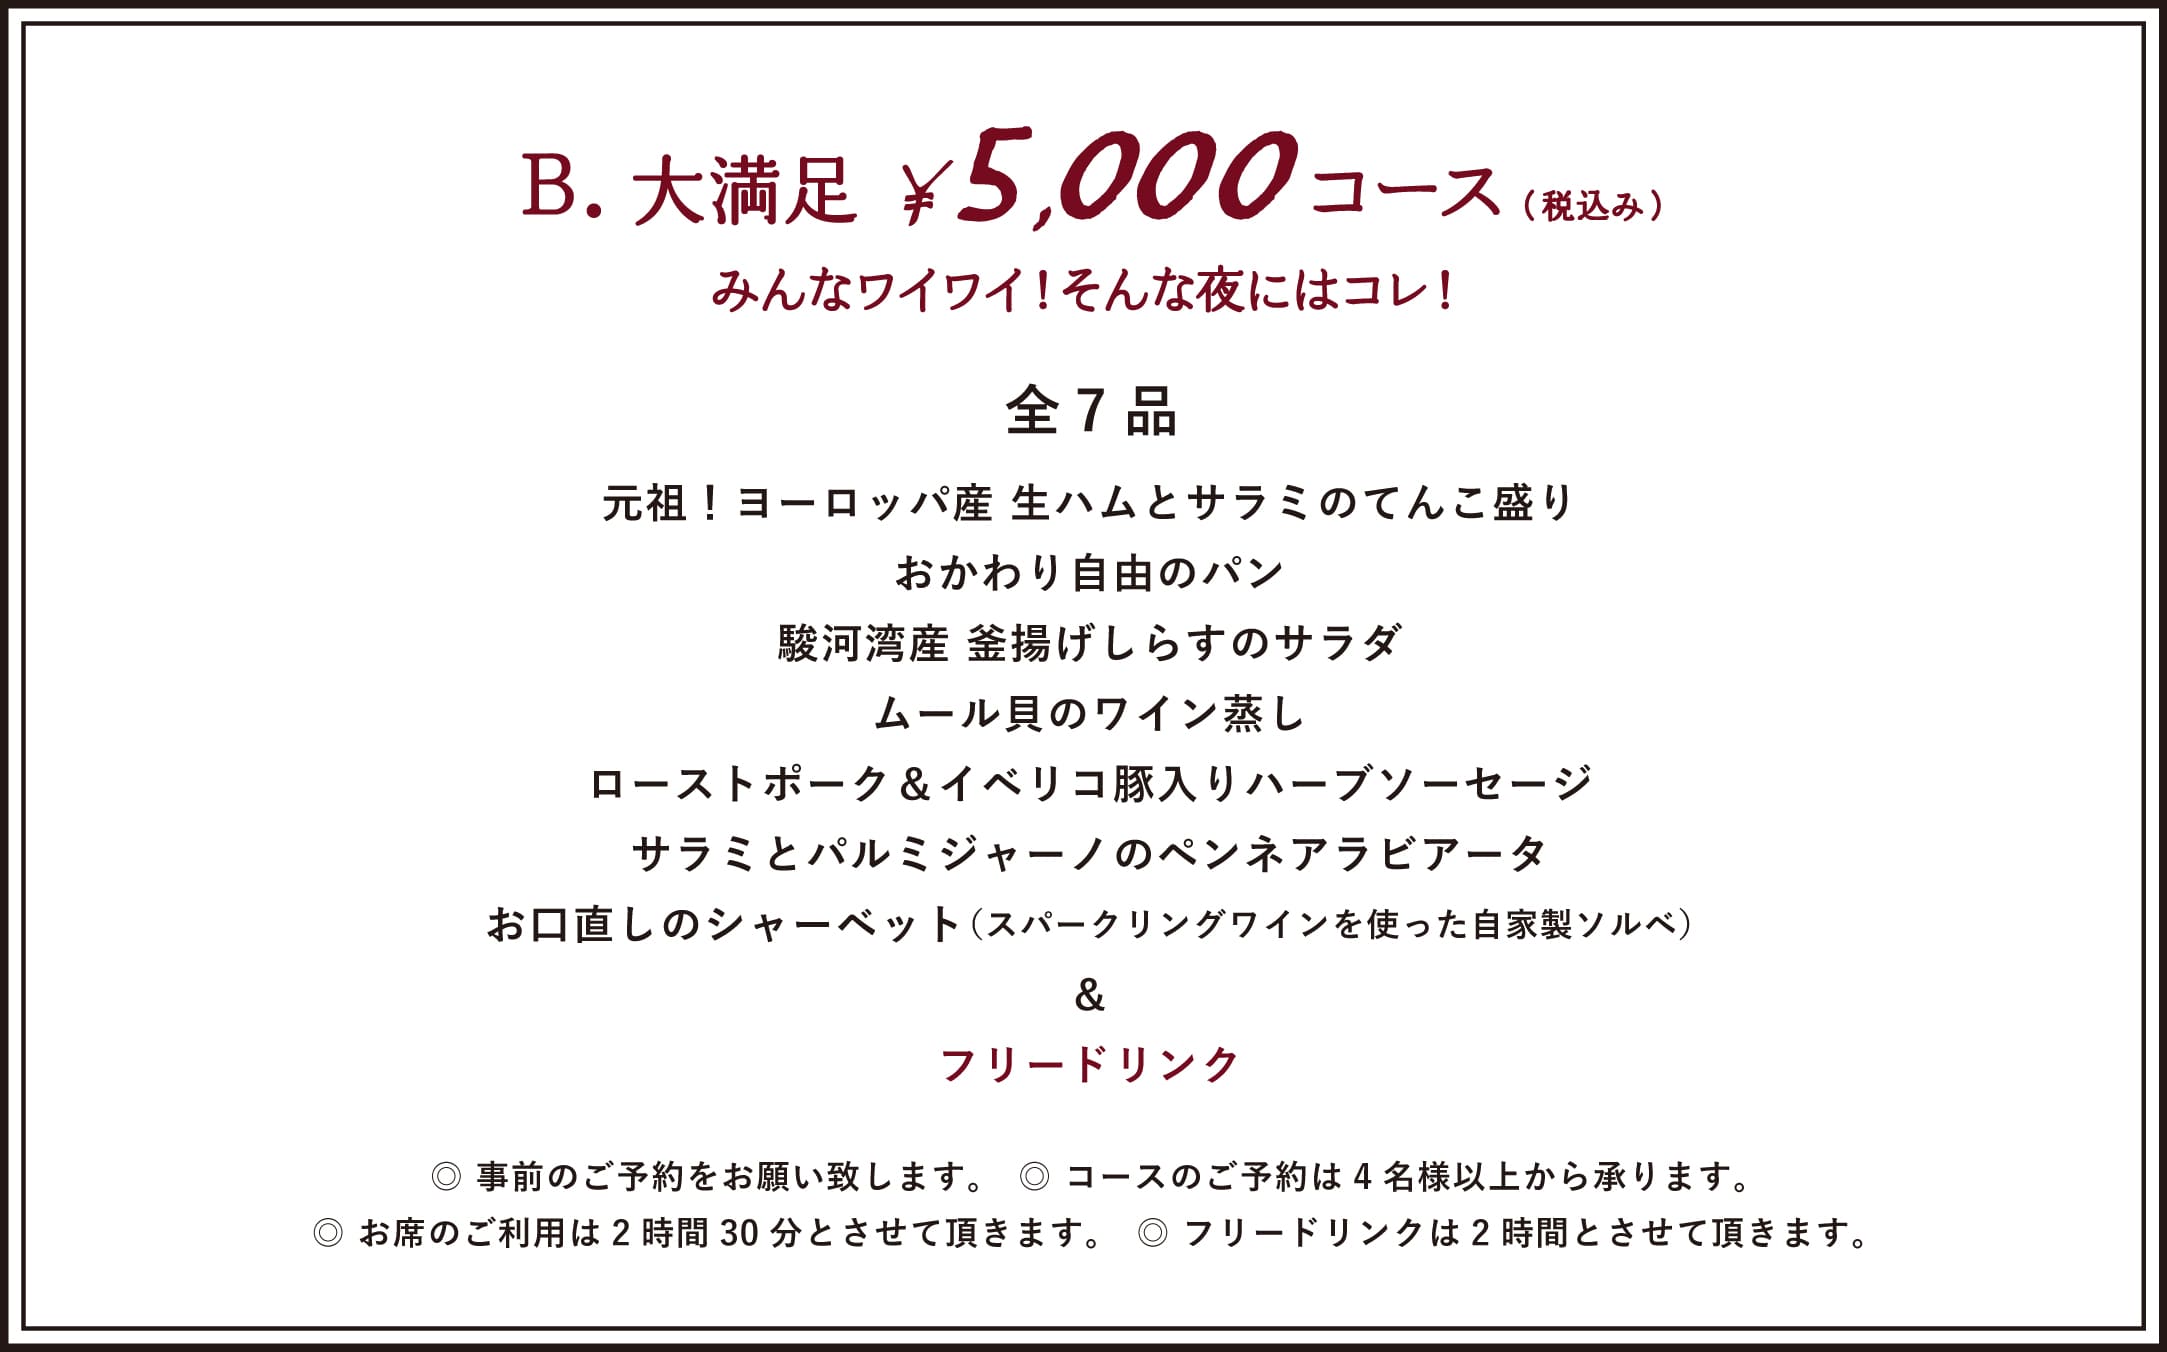 ¥5,000 COURSE